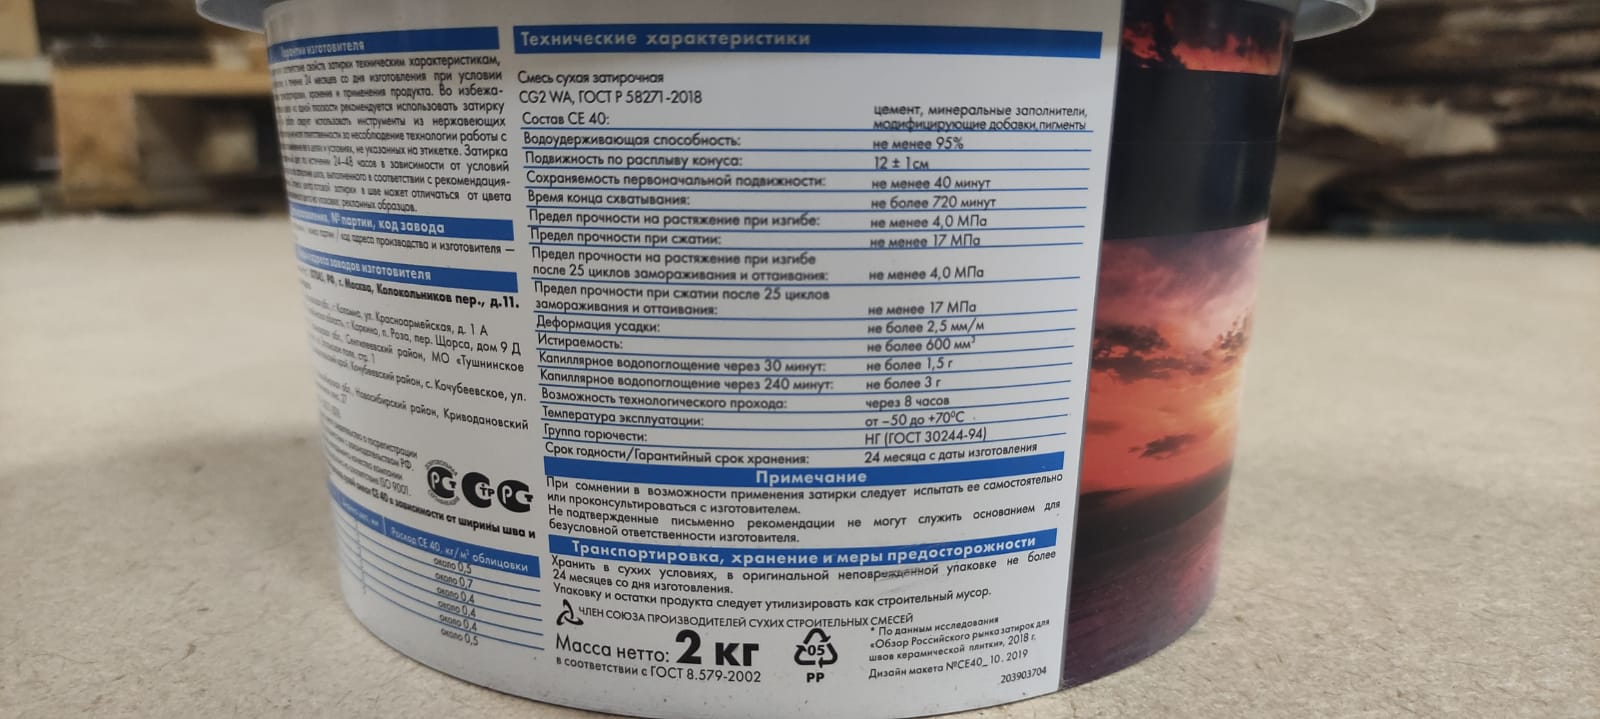 Эластичная водоотталкивающая затирка Ceresit CE 40 aquastatic 2 кг (цвет: графит)								